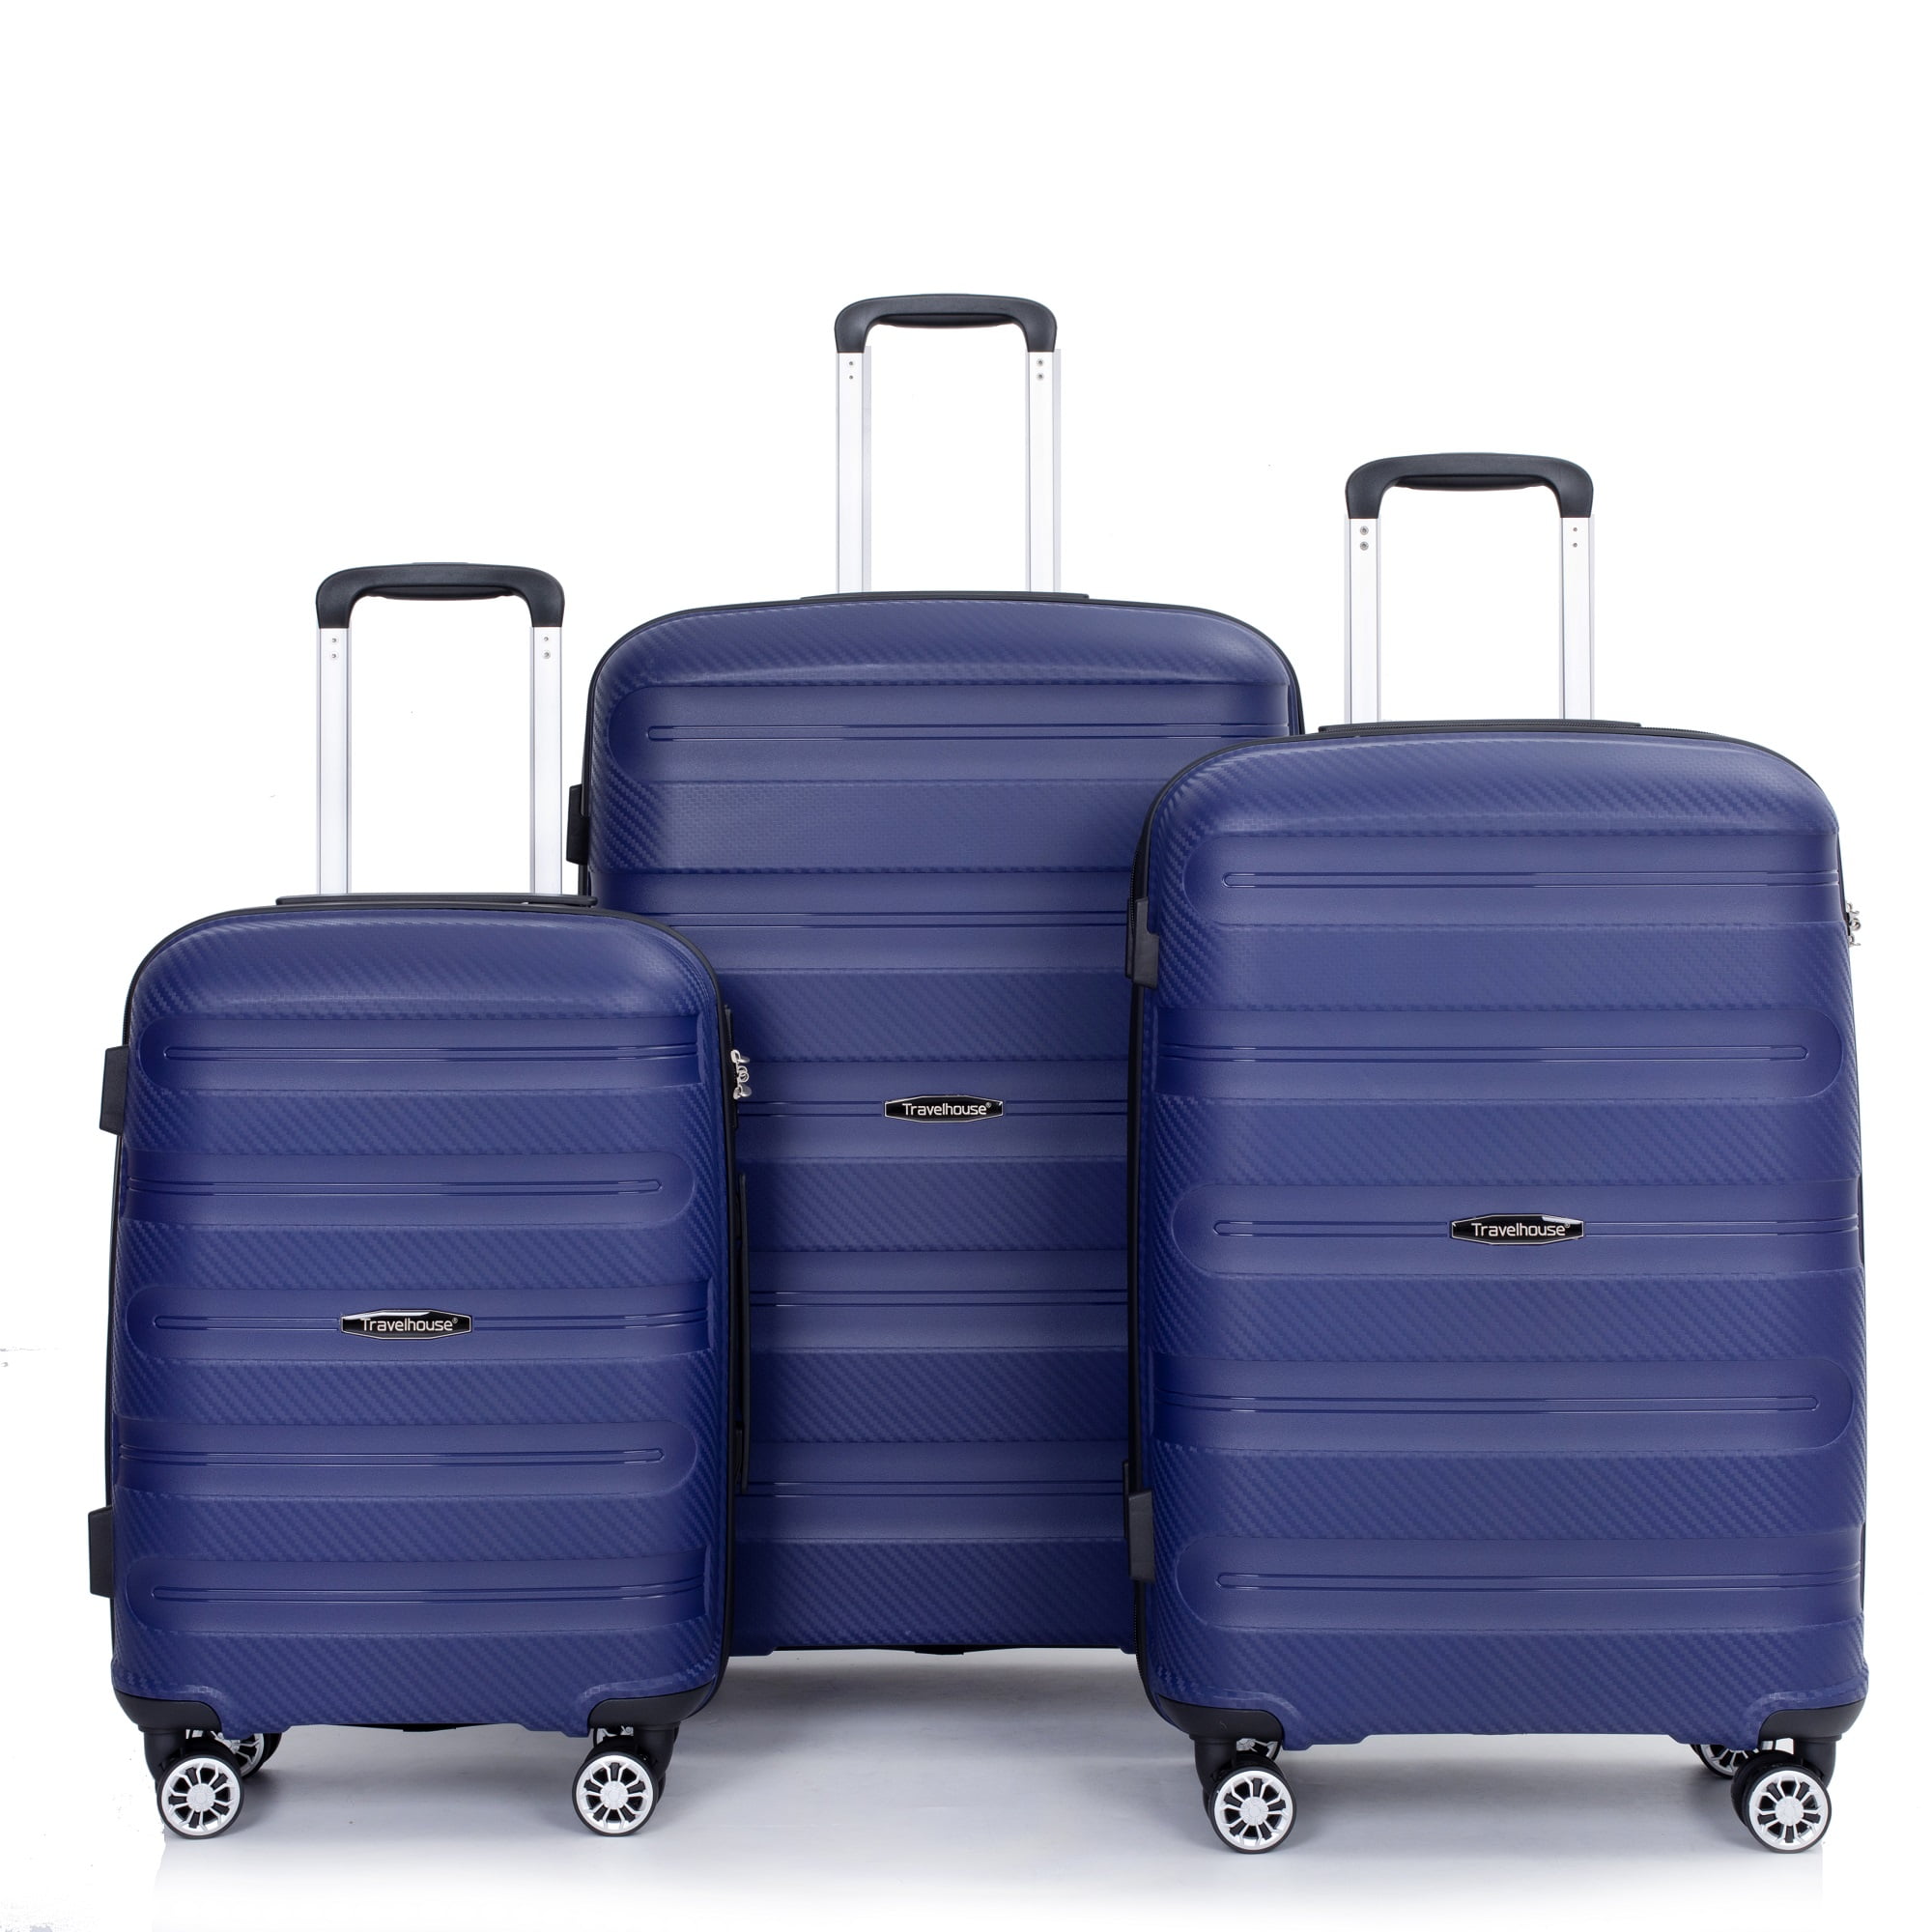 Travelhouse 3 Piece Hardside Luggage Sets Hardshell Durable Lightweight ...